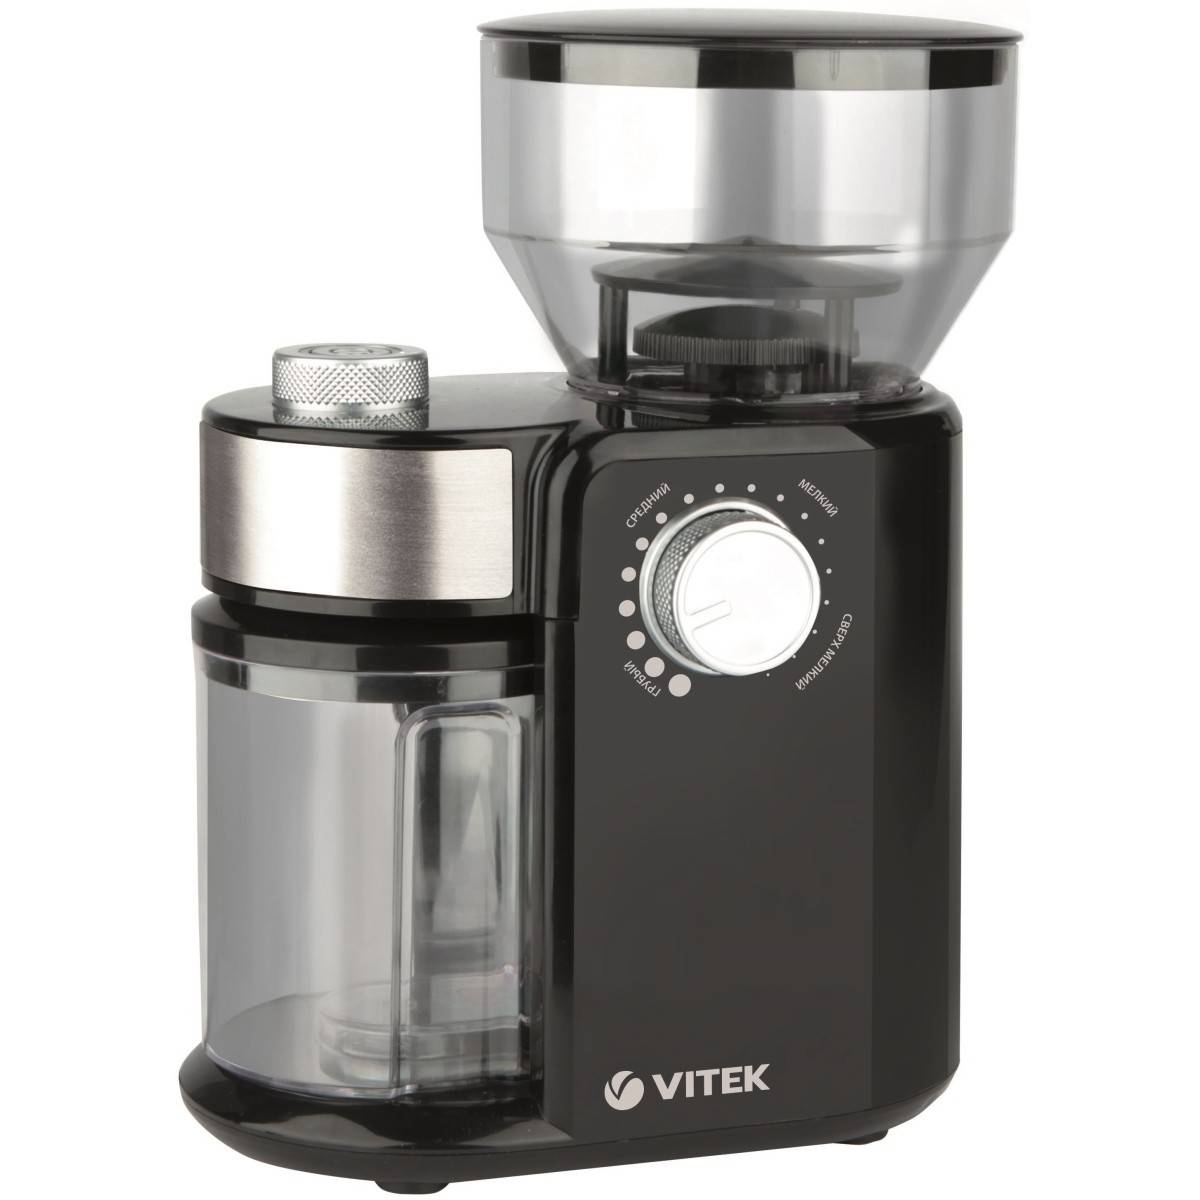 Vitek vt-1511 / vt-1519 – самая популярная рожковая кофеварка «витька». она же clatronic es 3584. тут же про bresko от эксперта